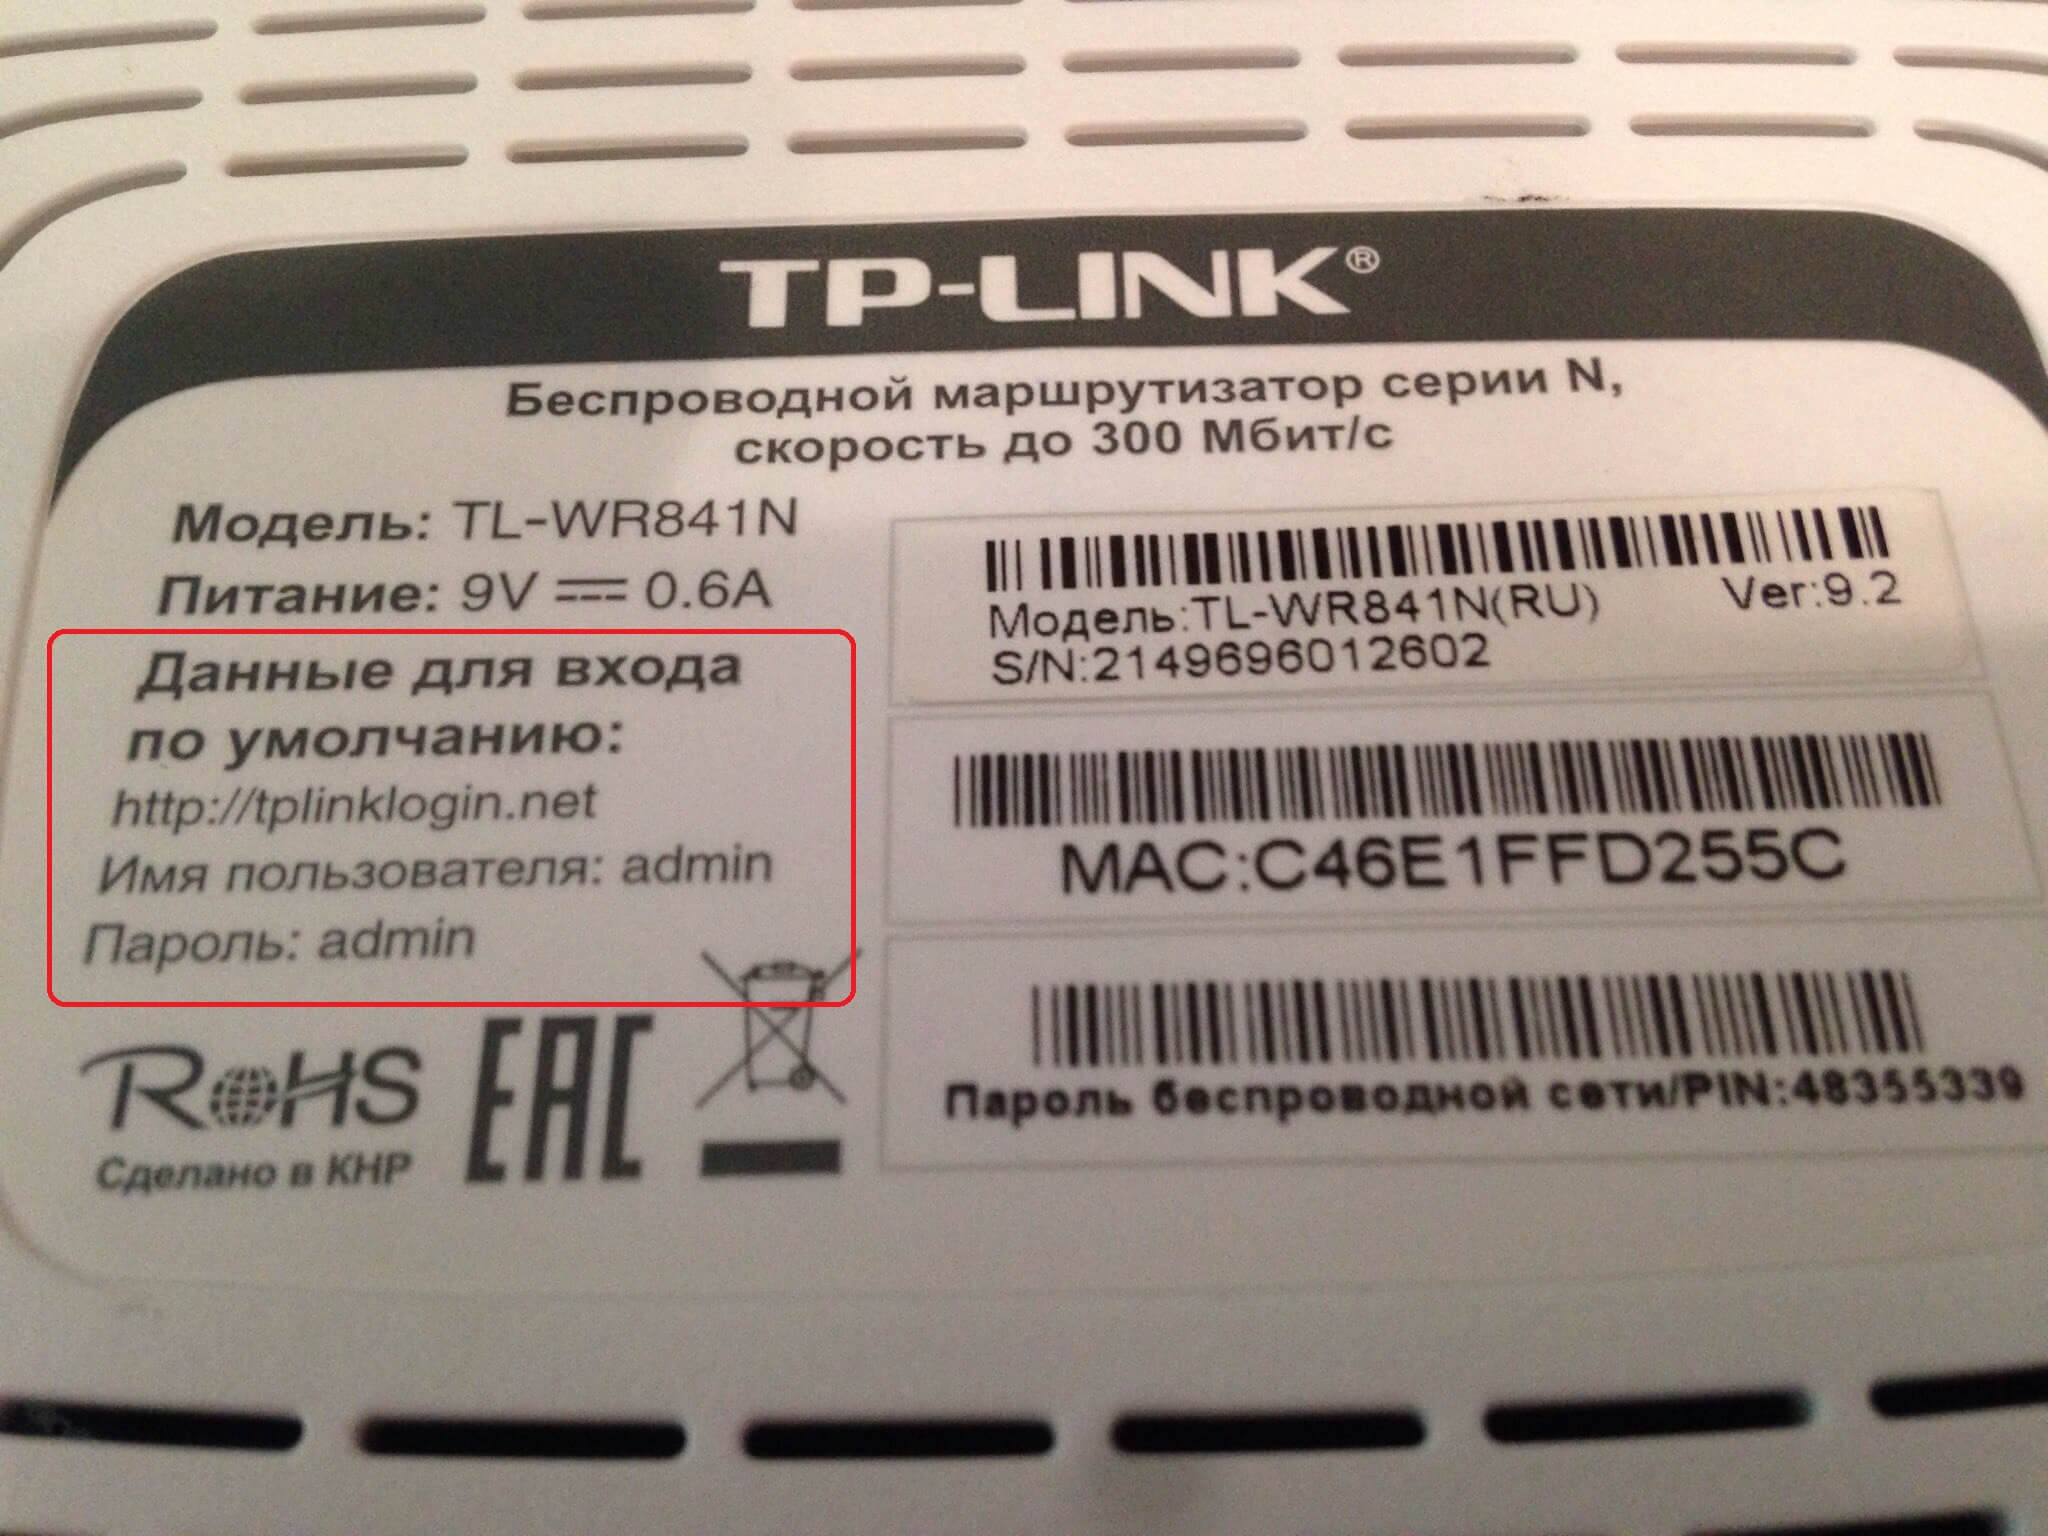 Роутер TP-LINK: как узнать стандартный пароль и пароль от Wi-Fi?